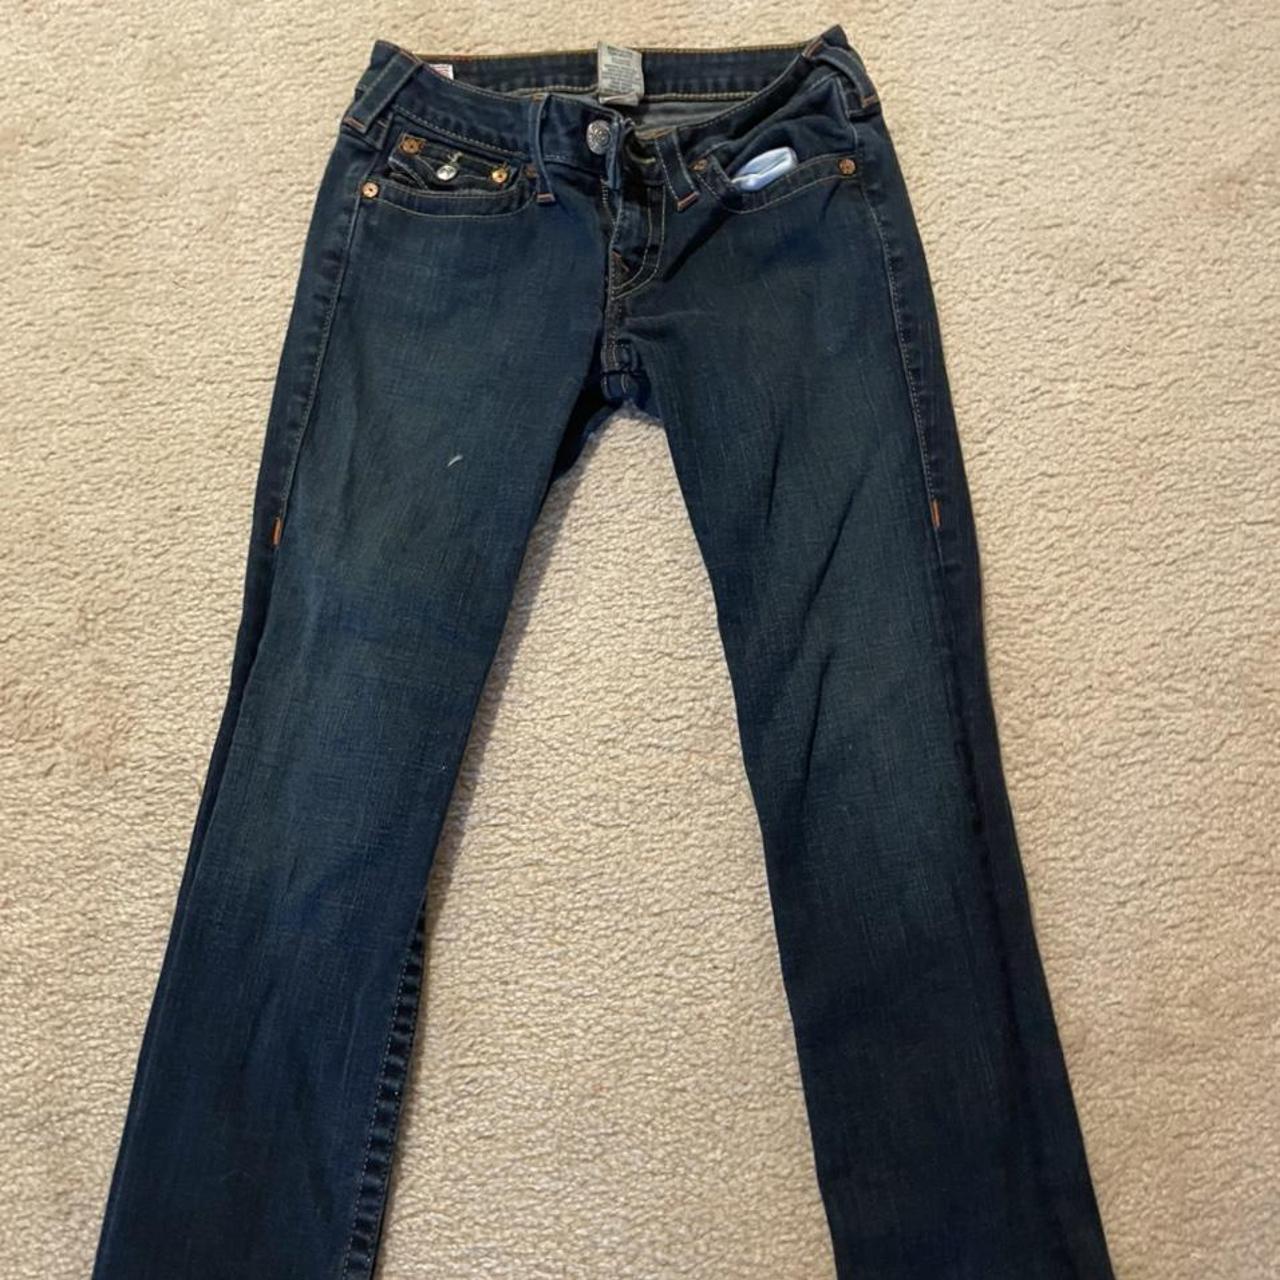 true religion dark wash jeans send offers :) - Depop